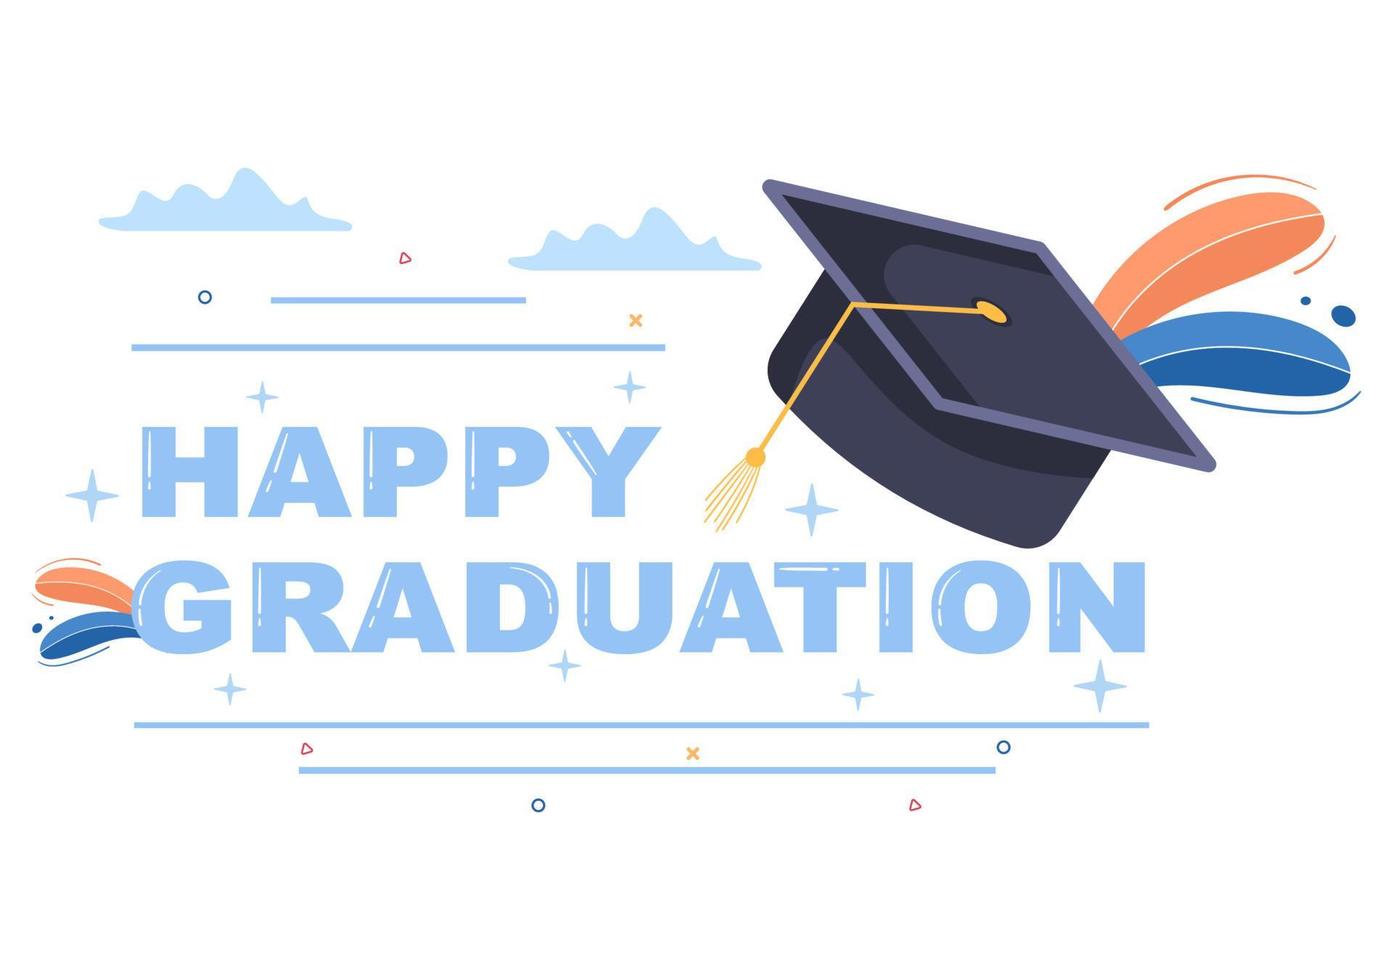 felice giorno della laurea degli studenti che celebrano l'illustrazione vettoriale di sfondo indossando abiti accademici, berretto da laureato e tenendo il diploma in stile piatto